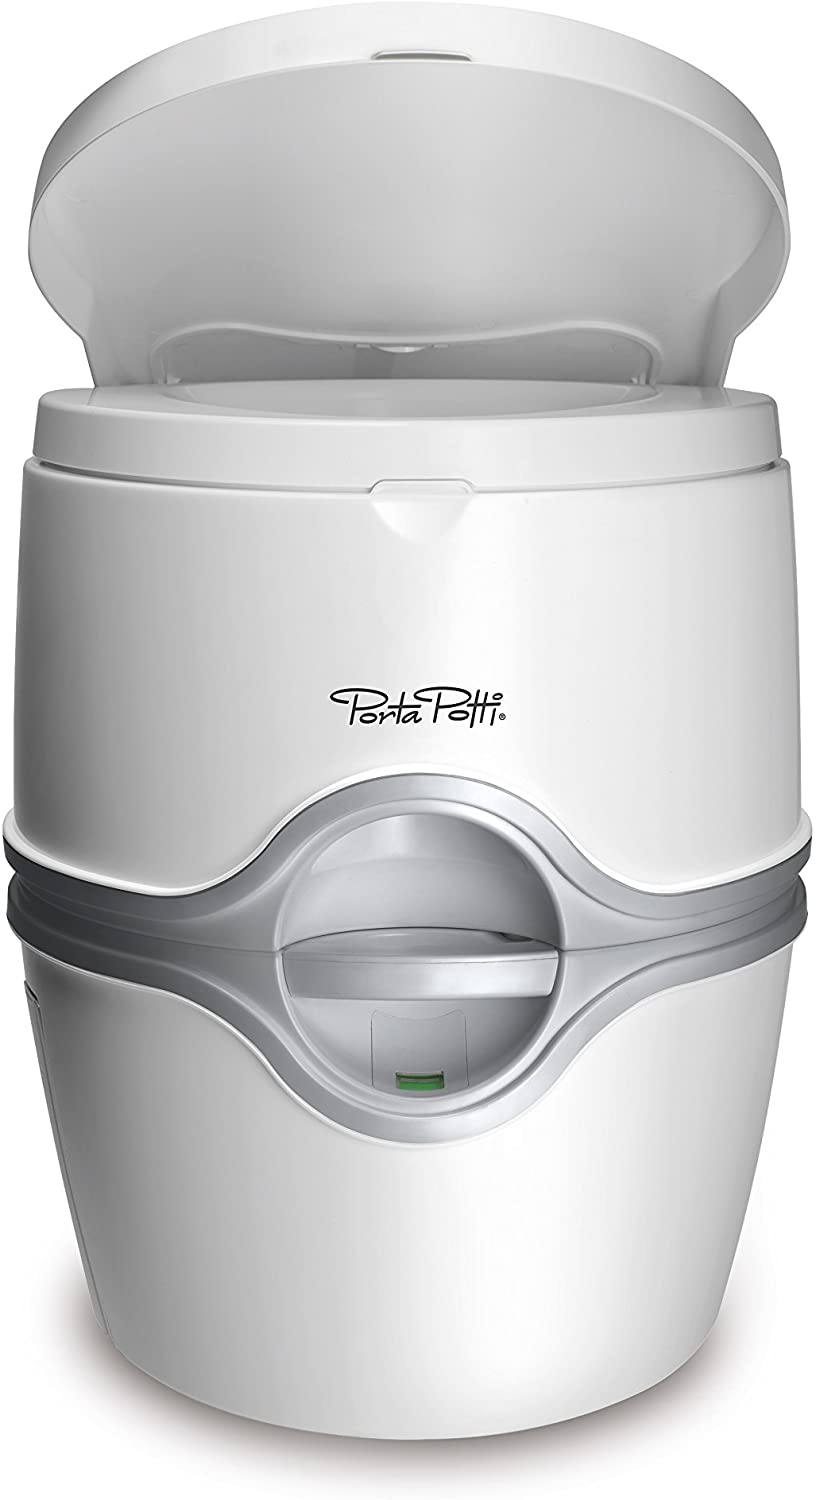 Porta Potti 92306 White Thetford Corp – The Best Portable RV Toilet